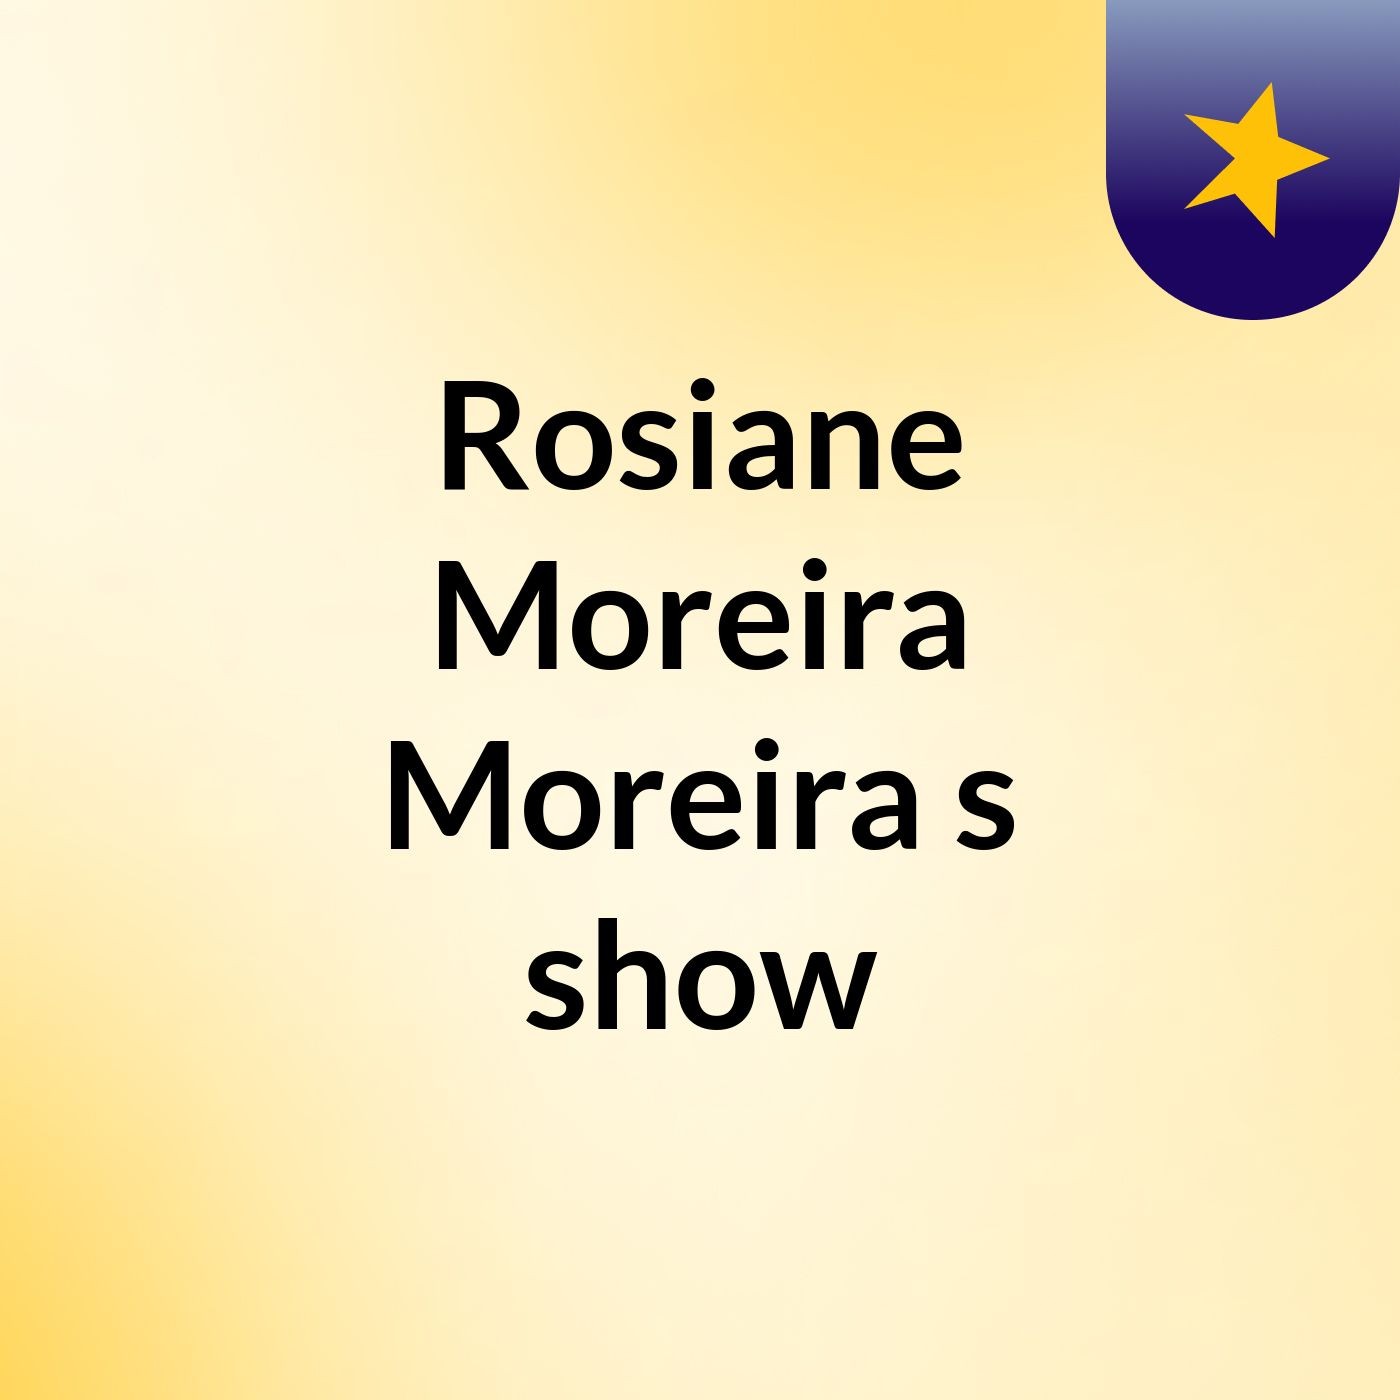 Rosiane Moreira Moreira's show